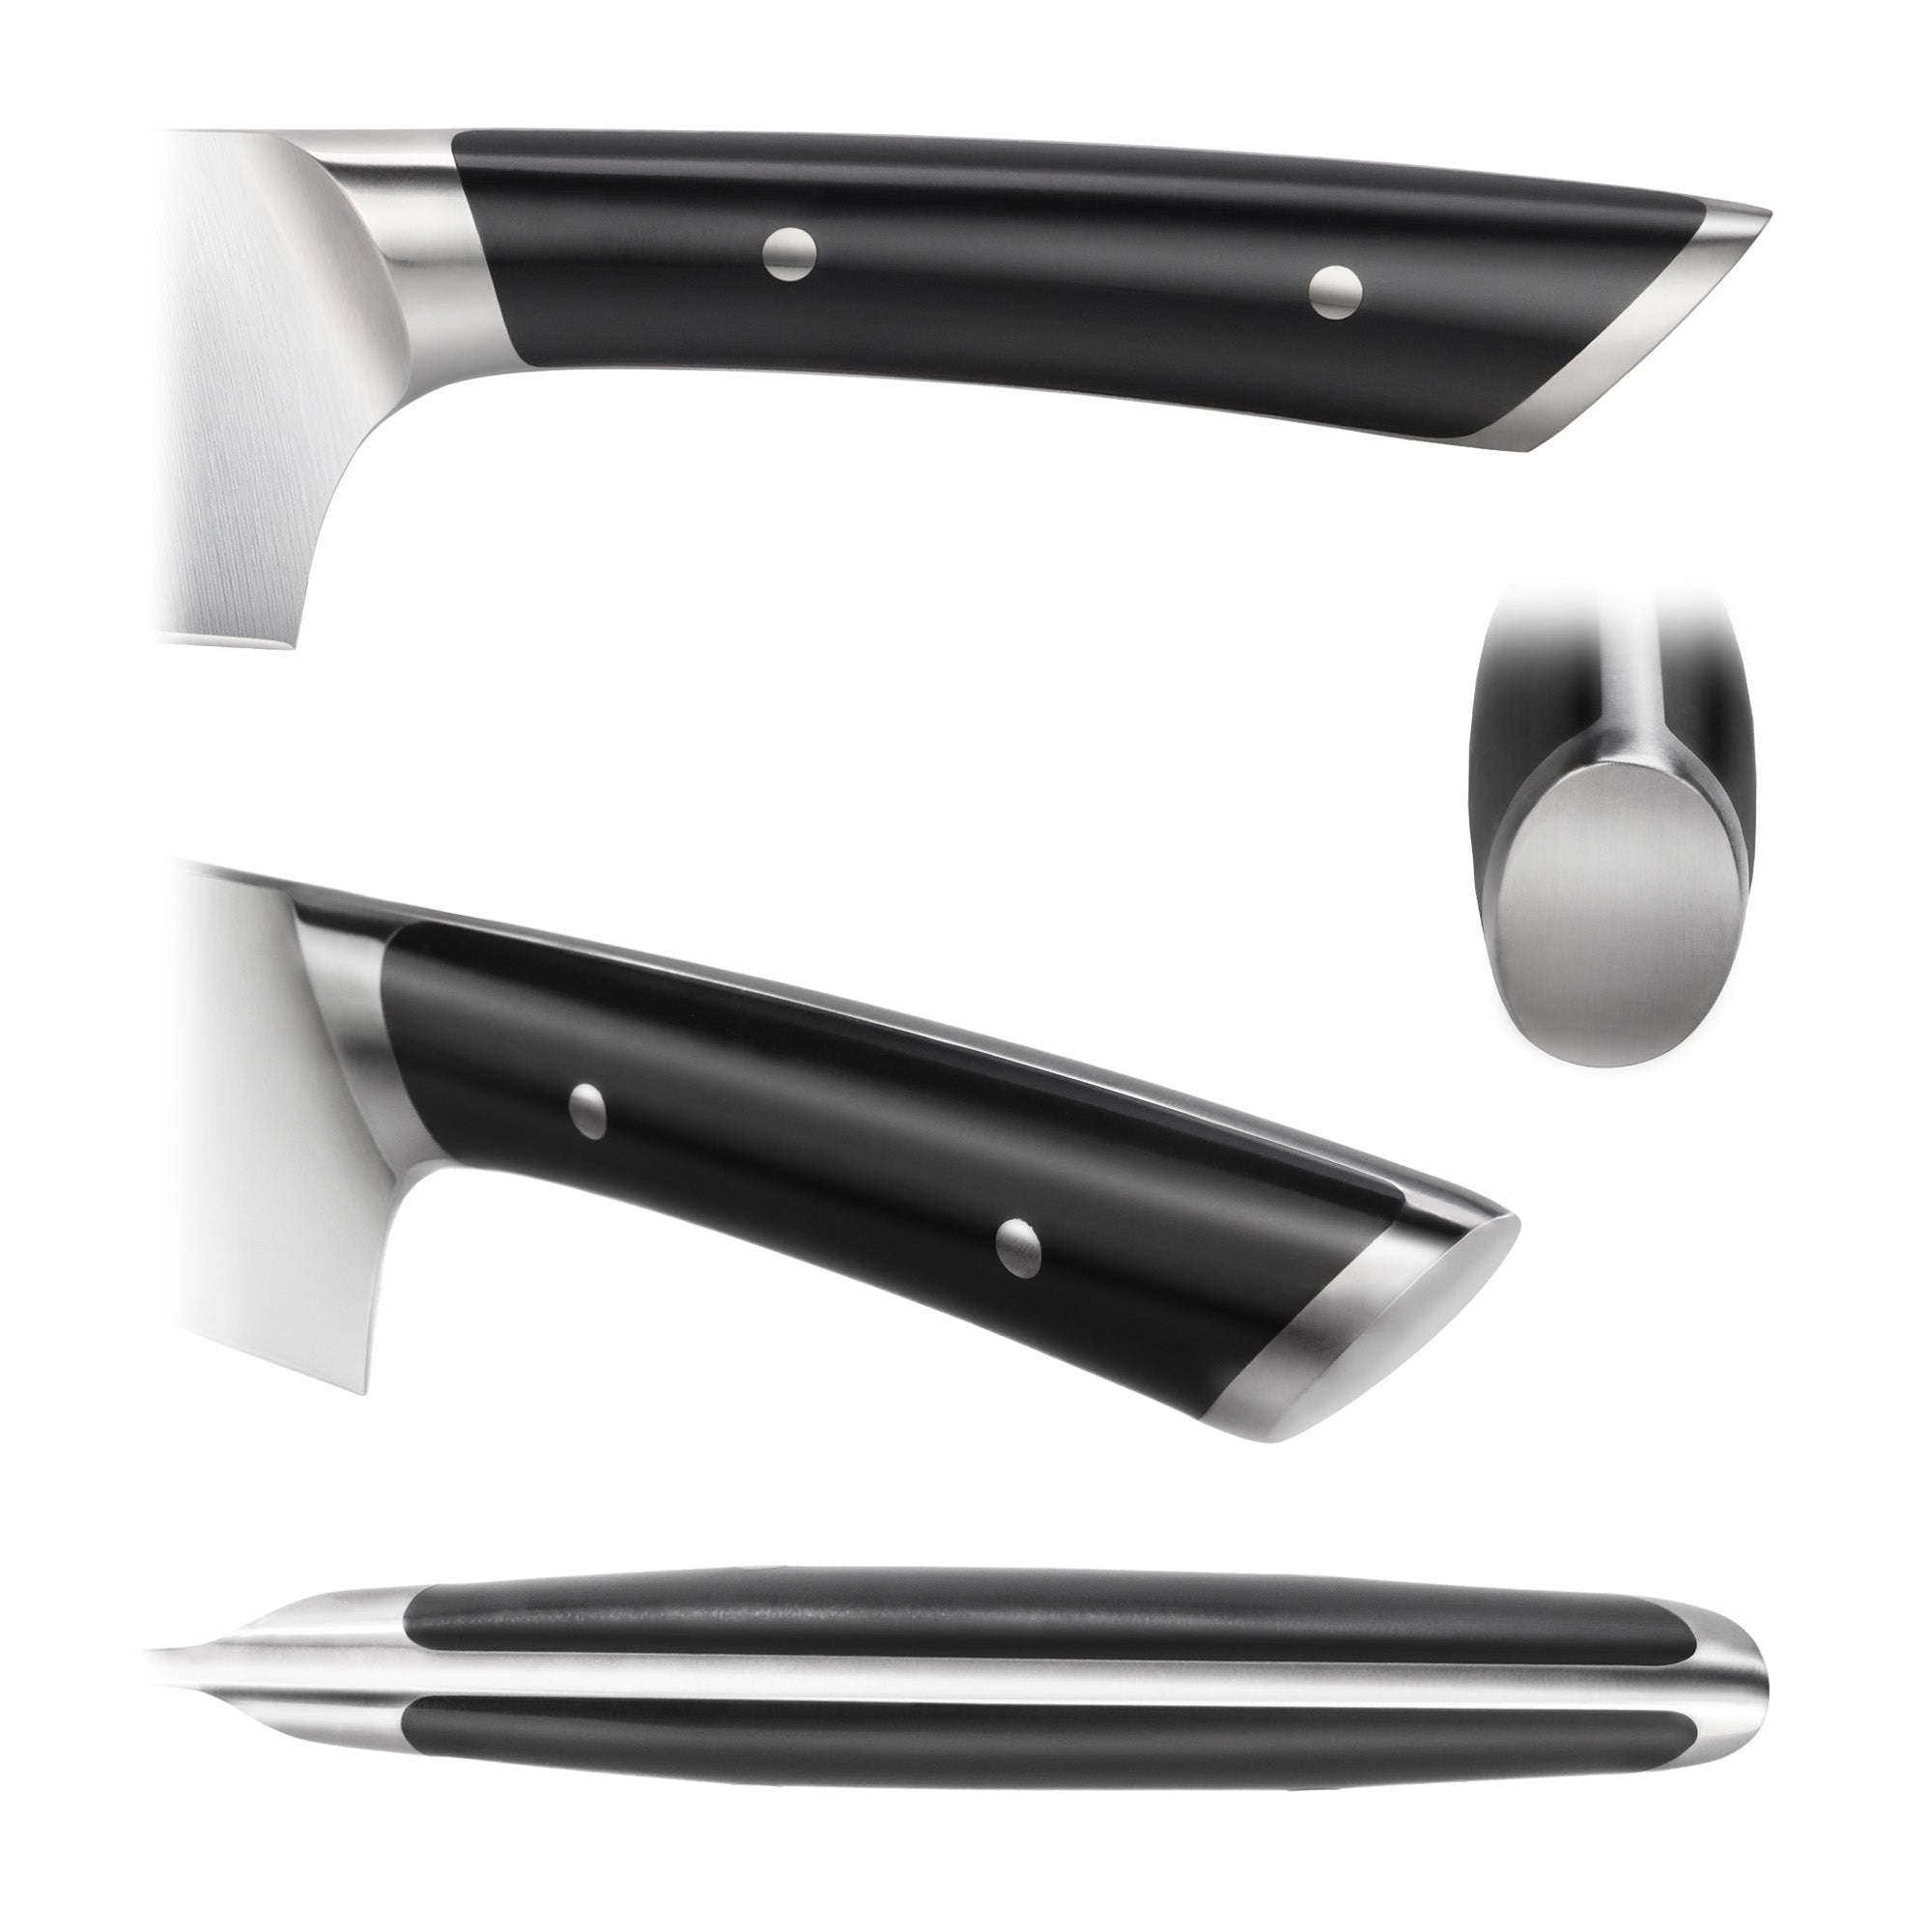 Cangshan HELENA Series German Steel 17-piece Knife Block Set, Black